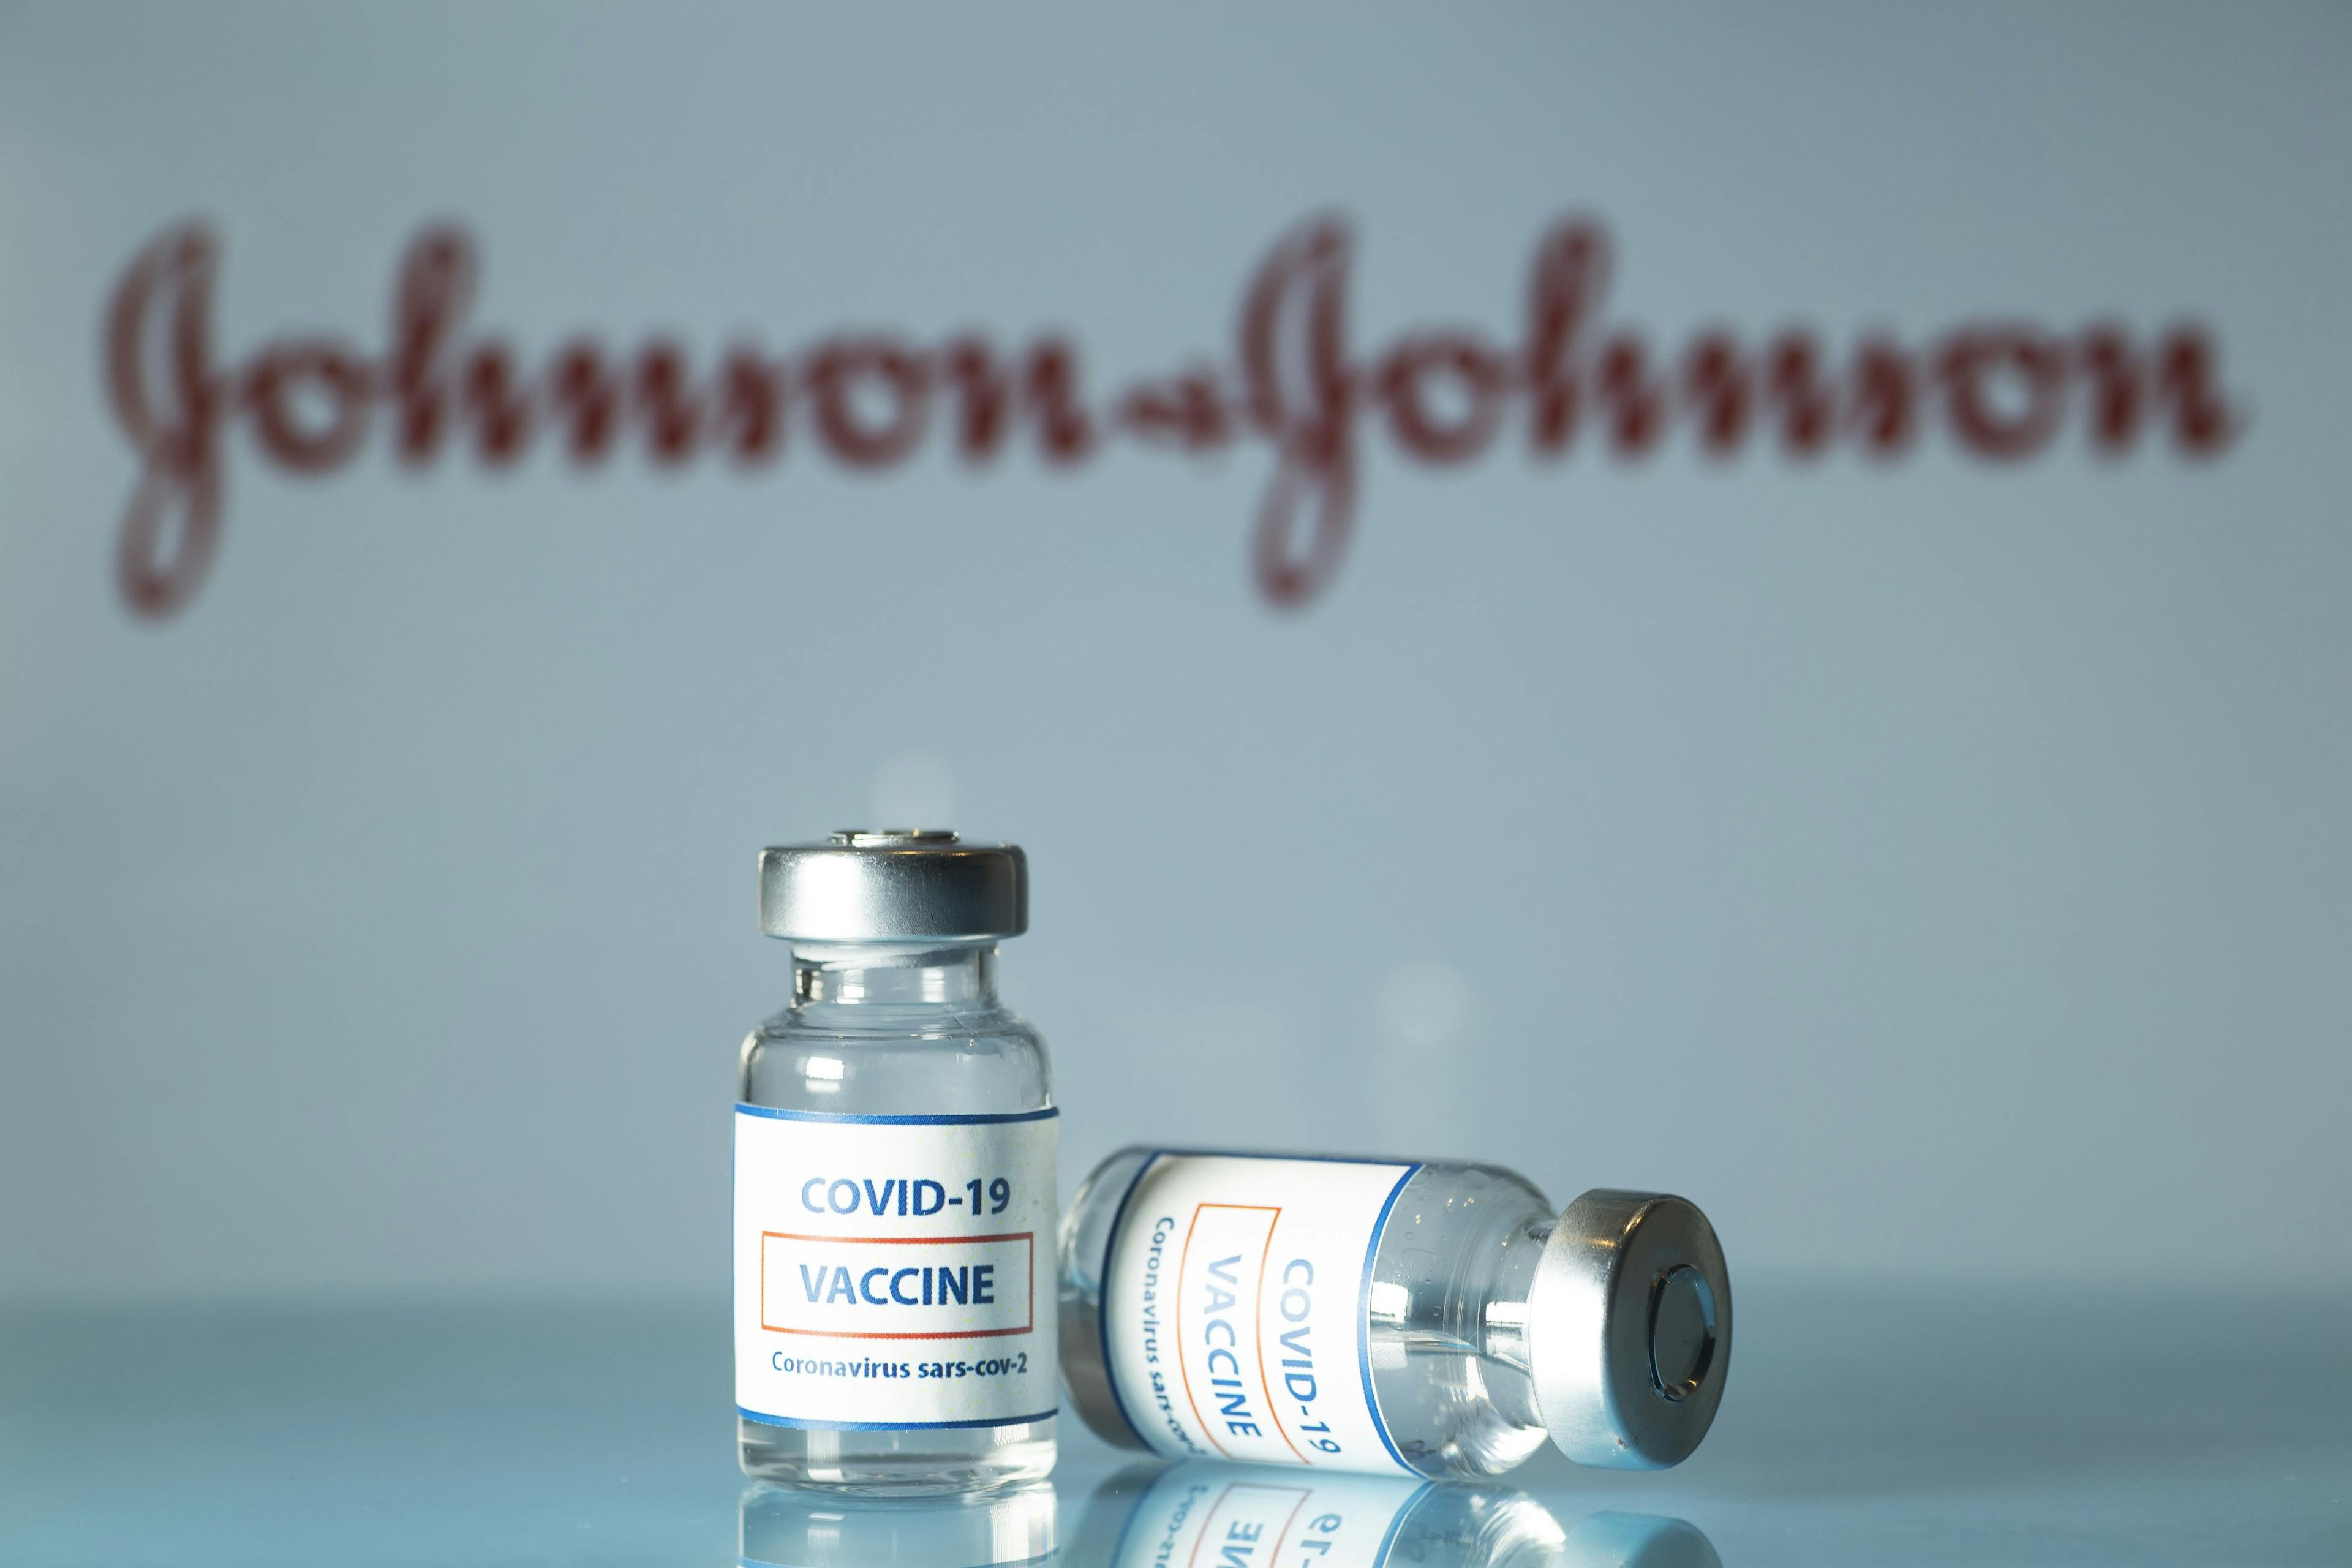 FDA Issues EUA for Johnson & Johnson COVID-19 Vaccine